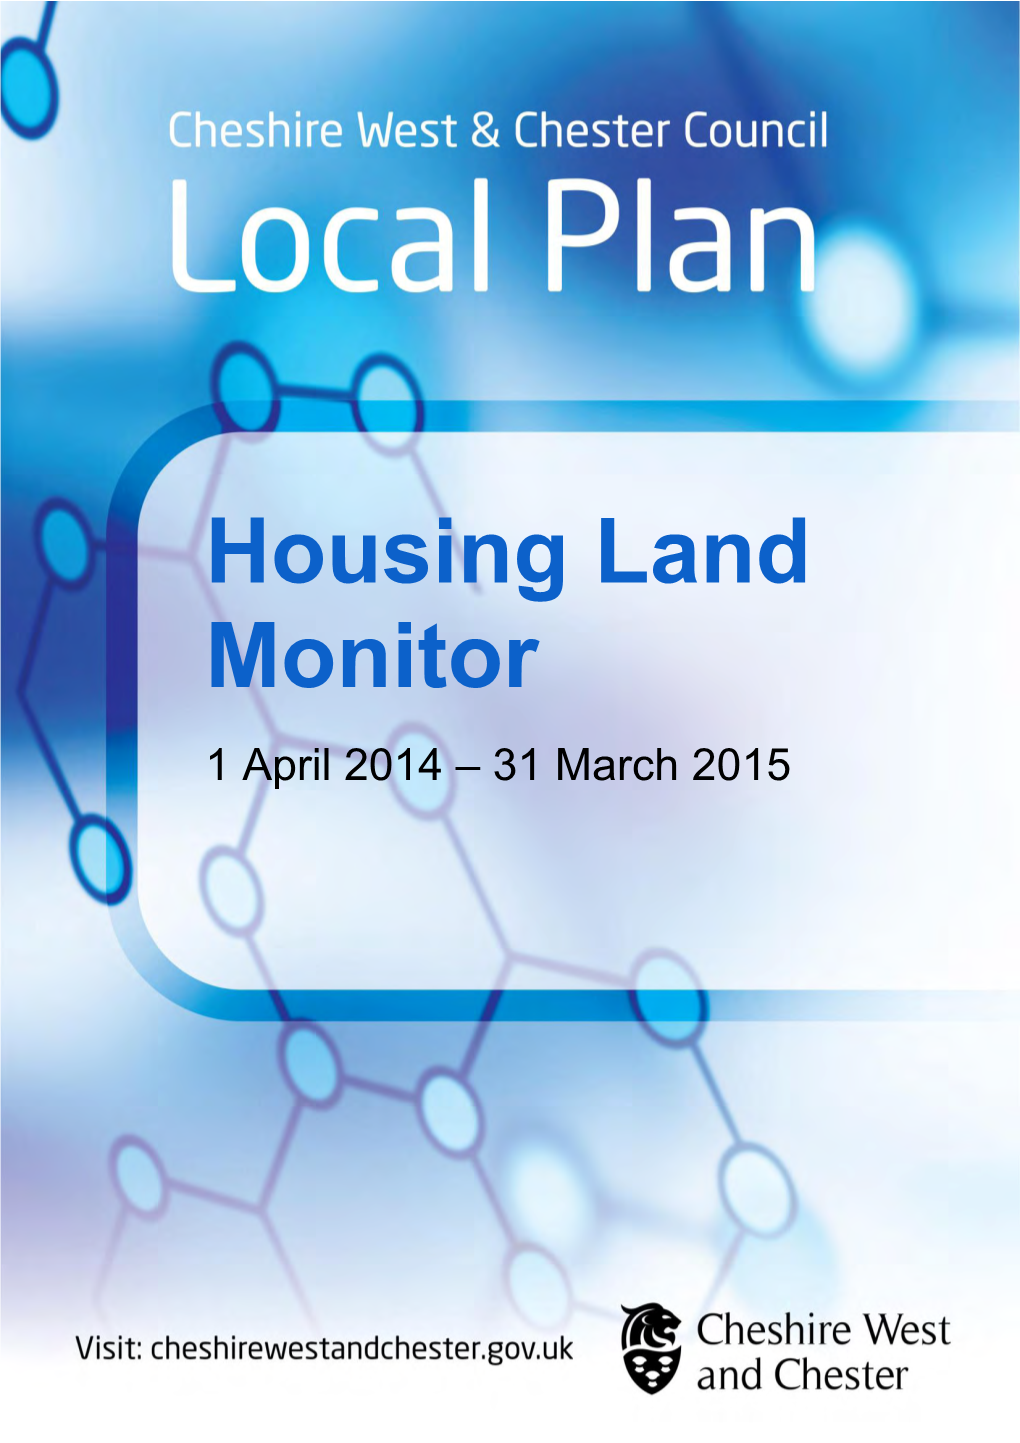 Housing Land Monitor 2014-2015